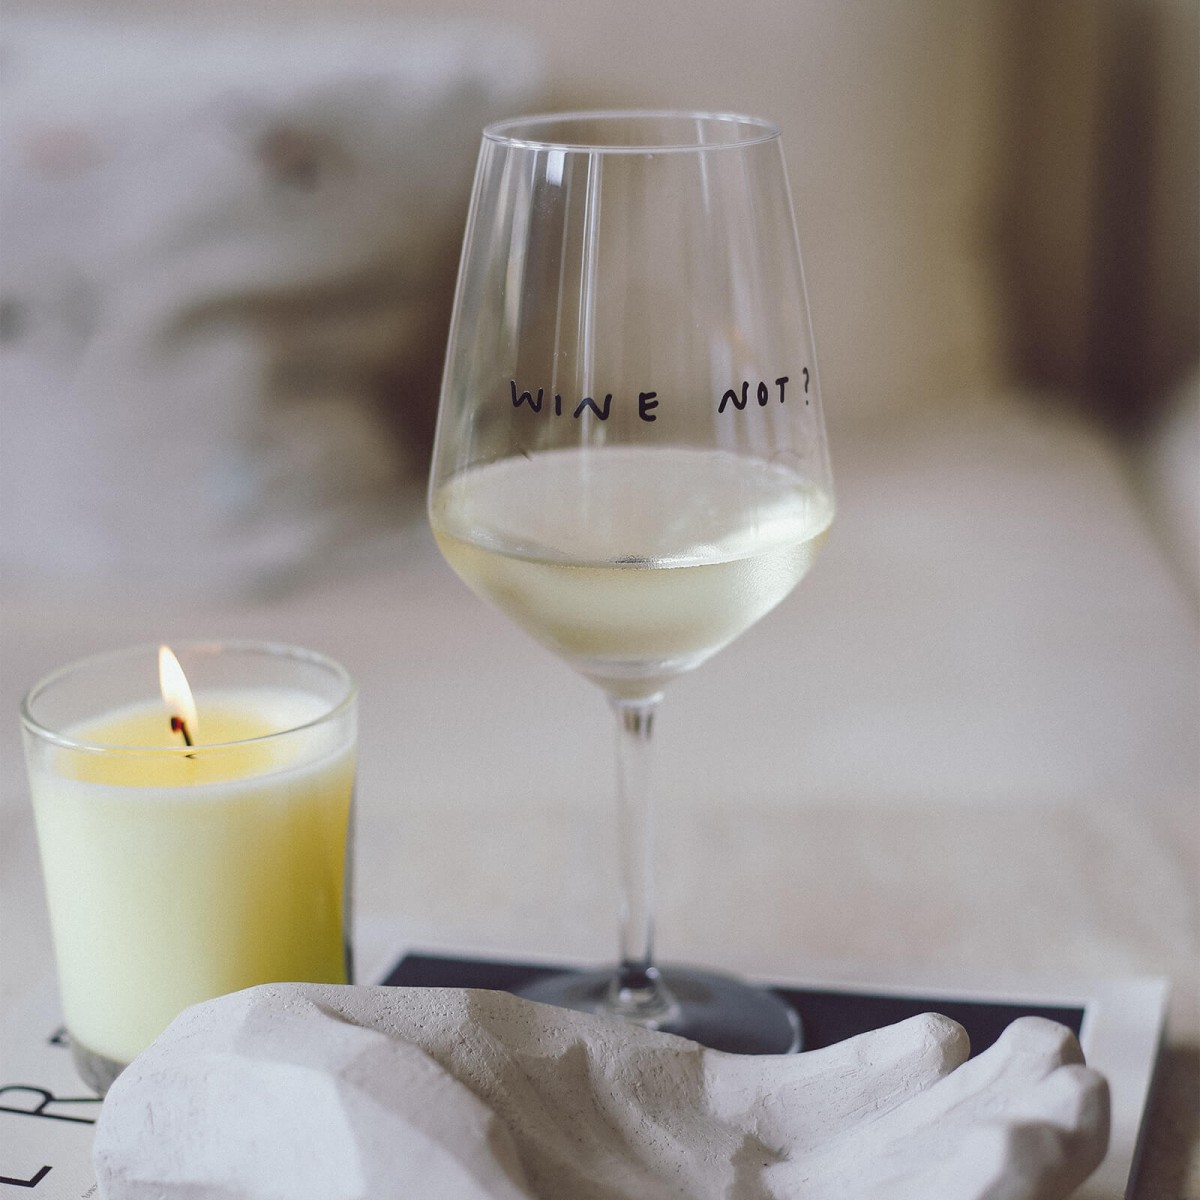 "Wine Not" Weinglas by Johanna Schwarzer × selekkt